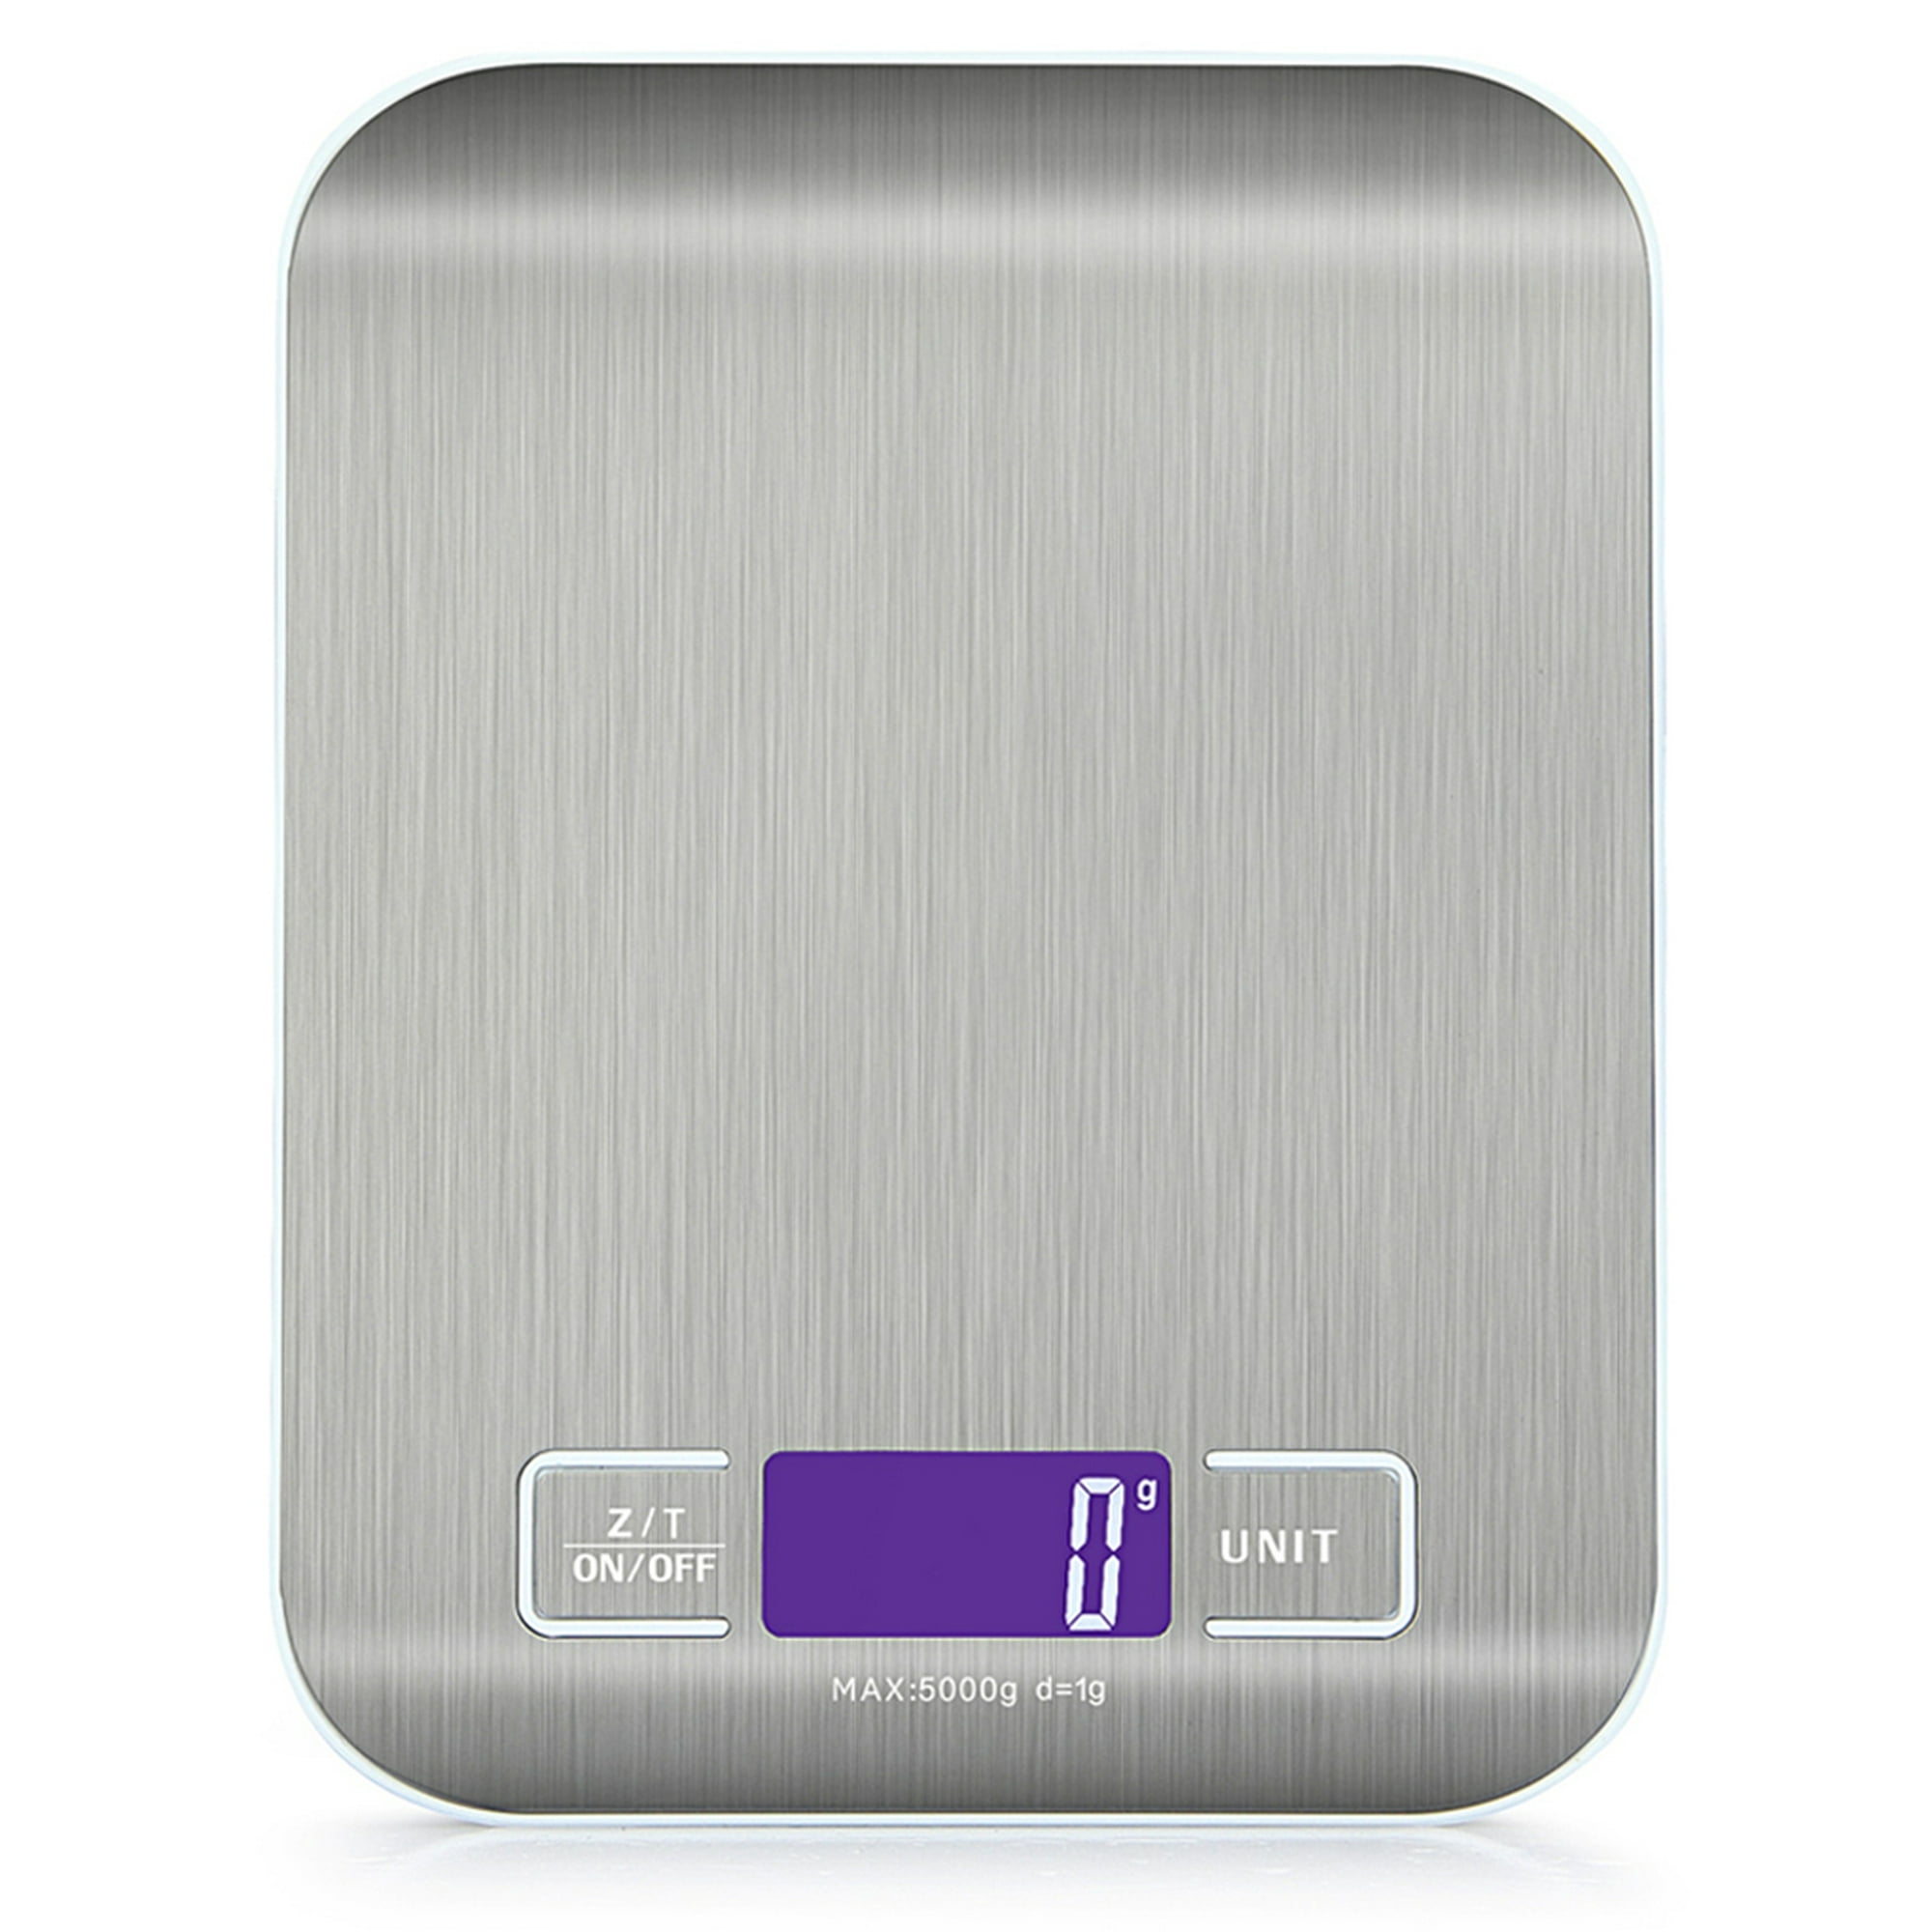 Báscula de cocina de alta precisión, medición de pesaje de alimentos para  hornear, fiable, multifunción - AliExpress